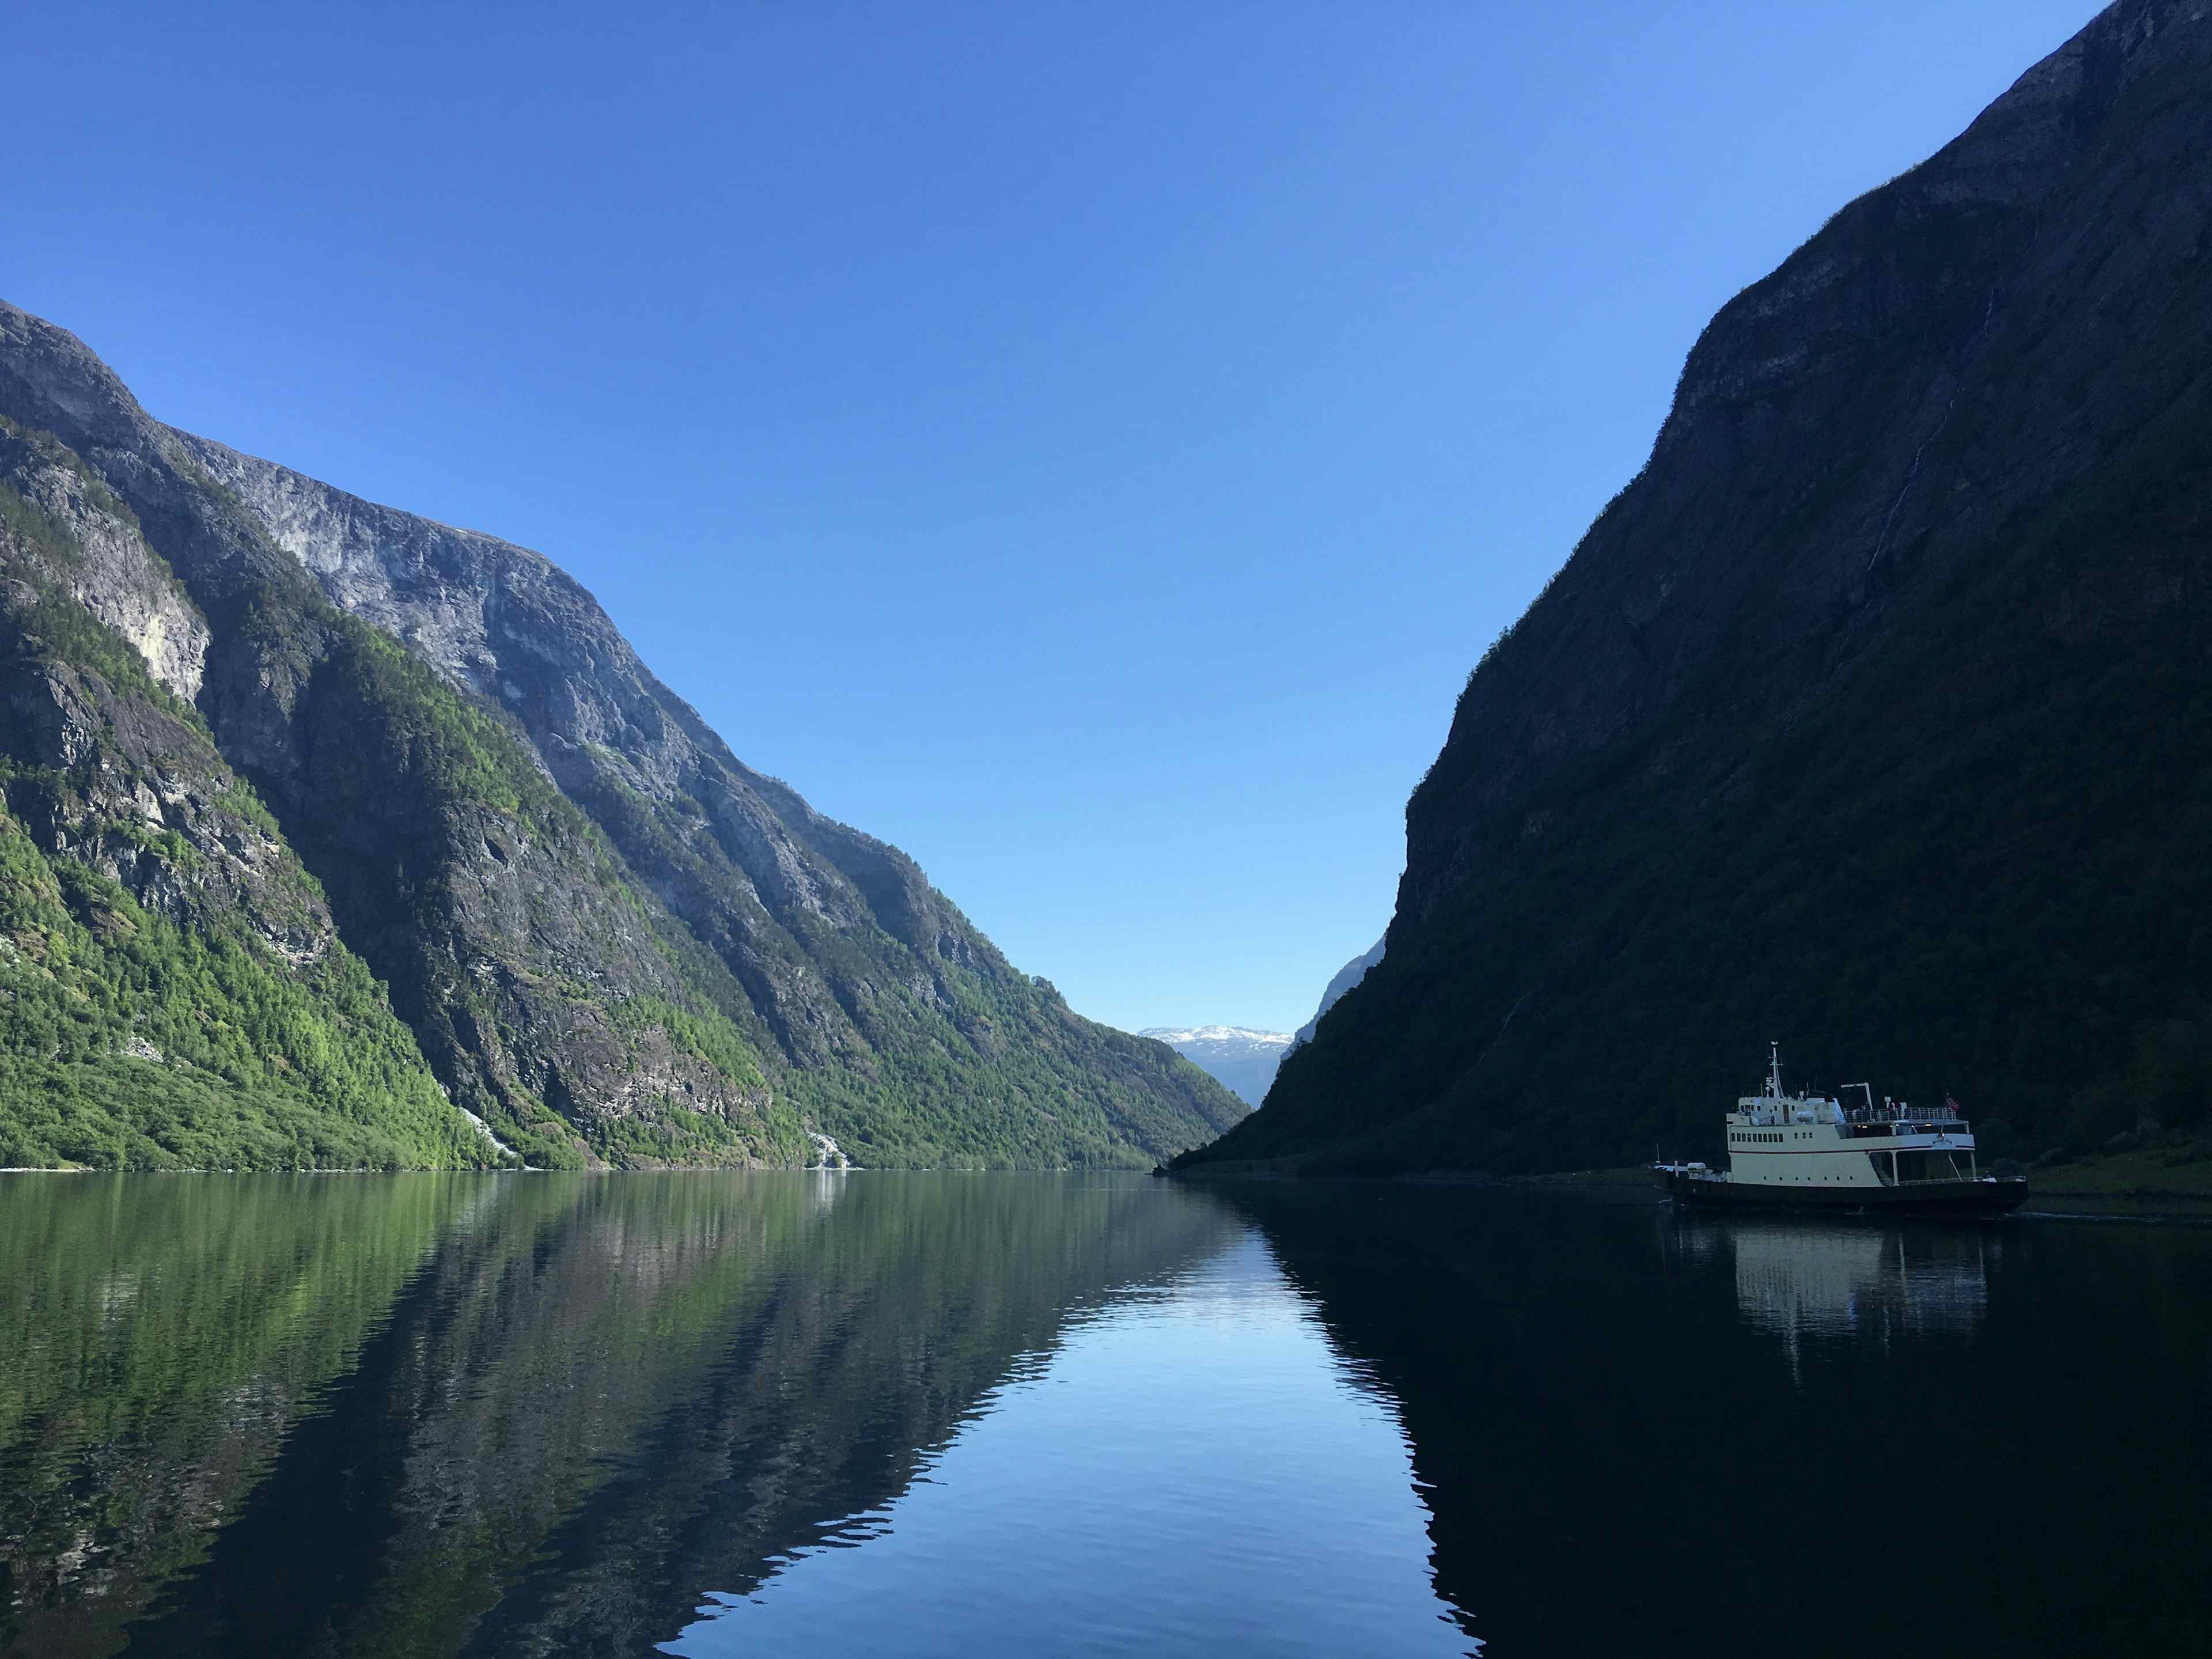 Lustrabaatane fjordcruise nærøyfjorden